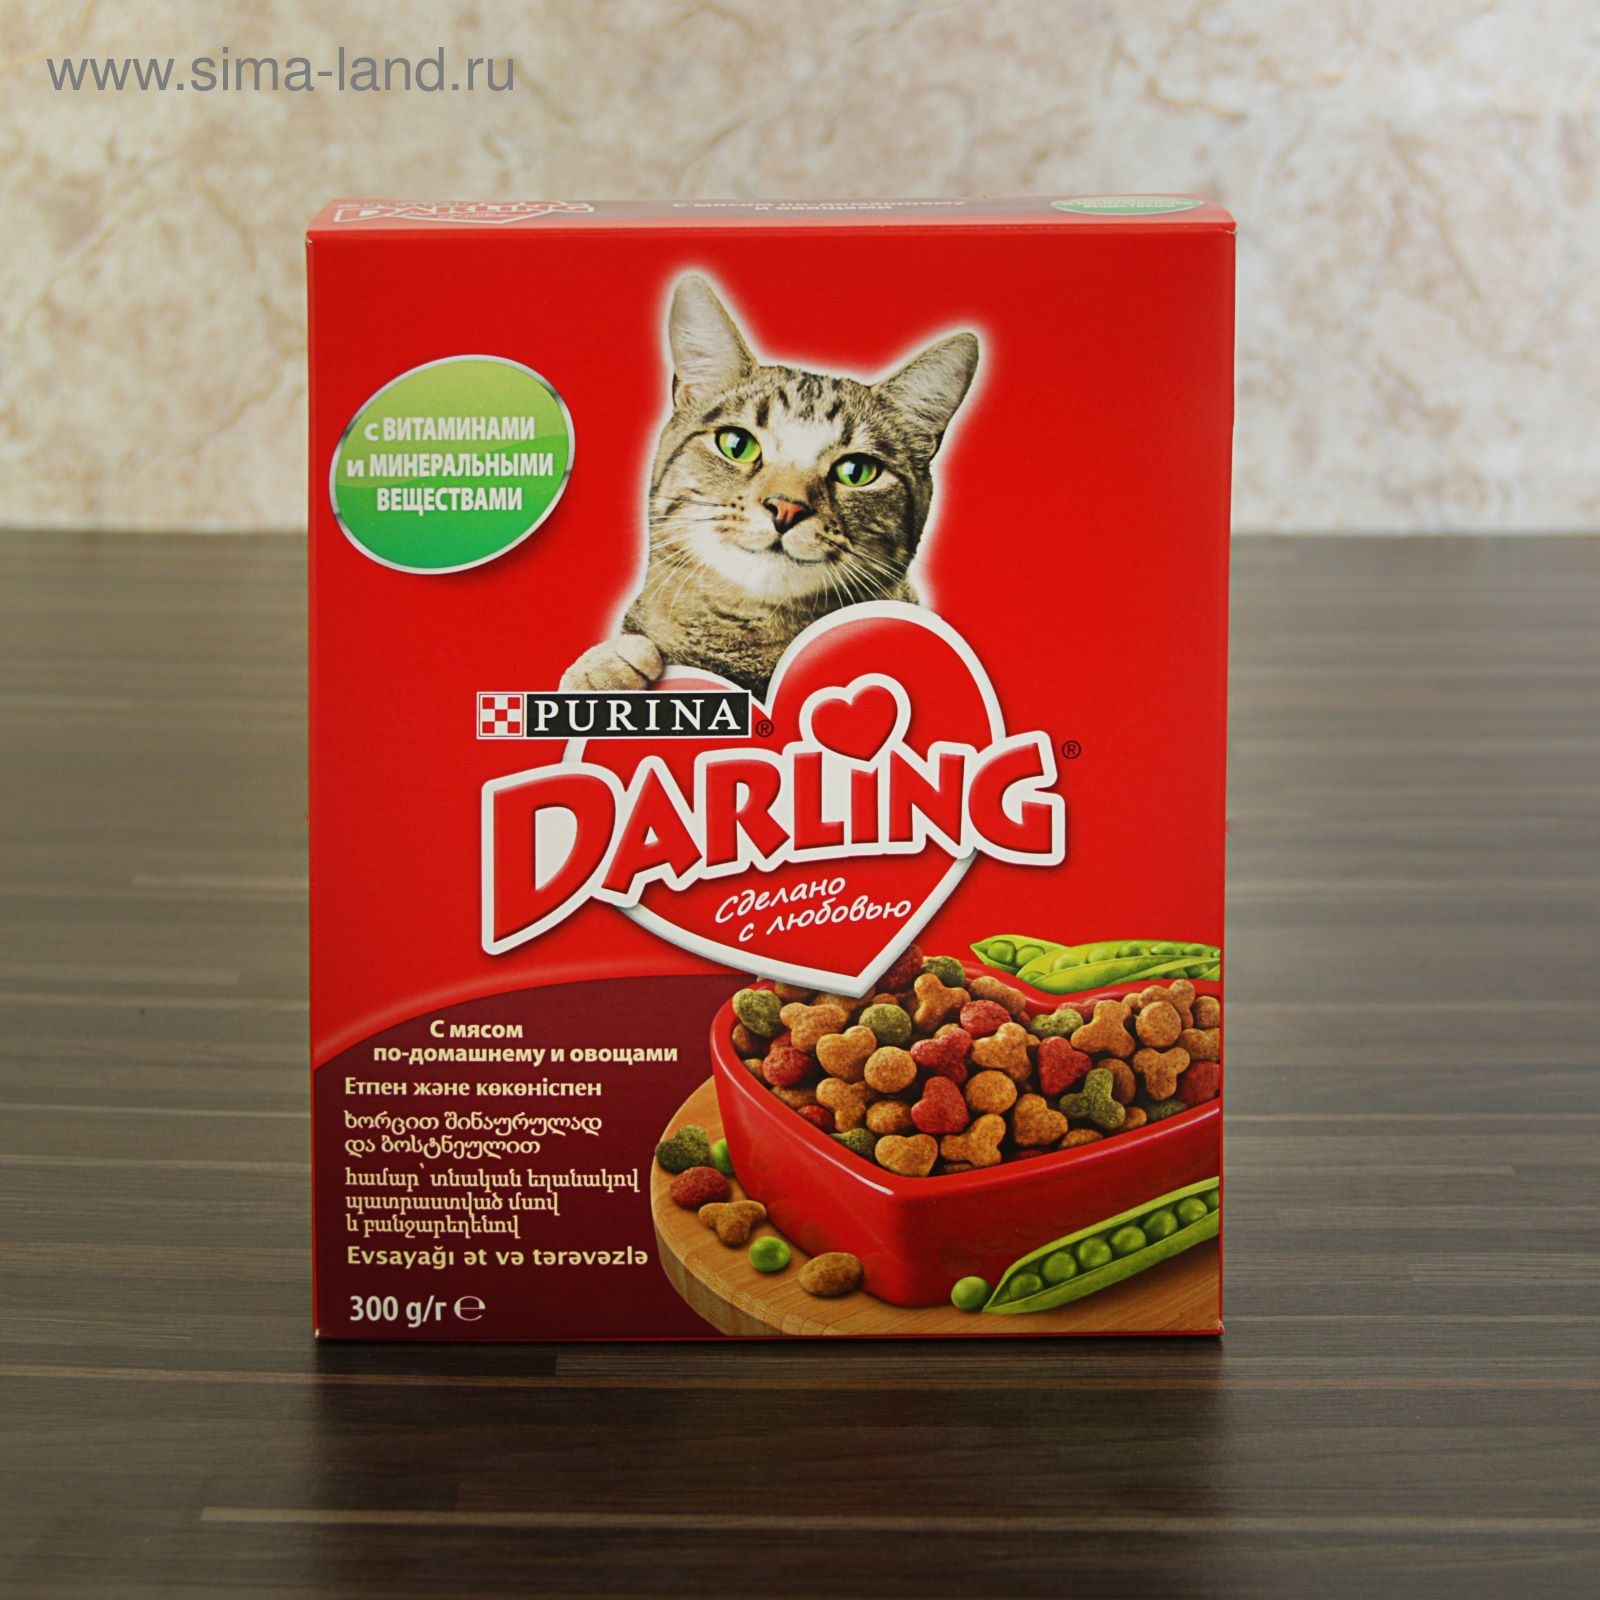 Лучший российский сухой корм для кошек. Дарлинг корма для кошек. Пурина Дарлинг для кошек. Сухой корм для кошек Darling. Дарлинг корм для кошек сухой мясо овощи.